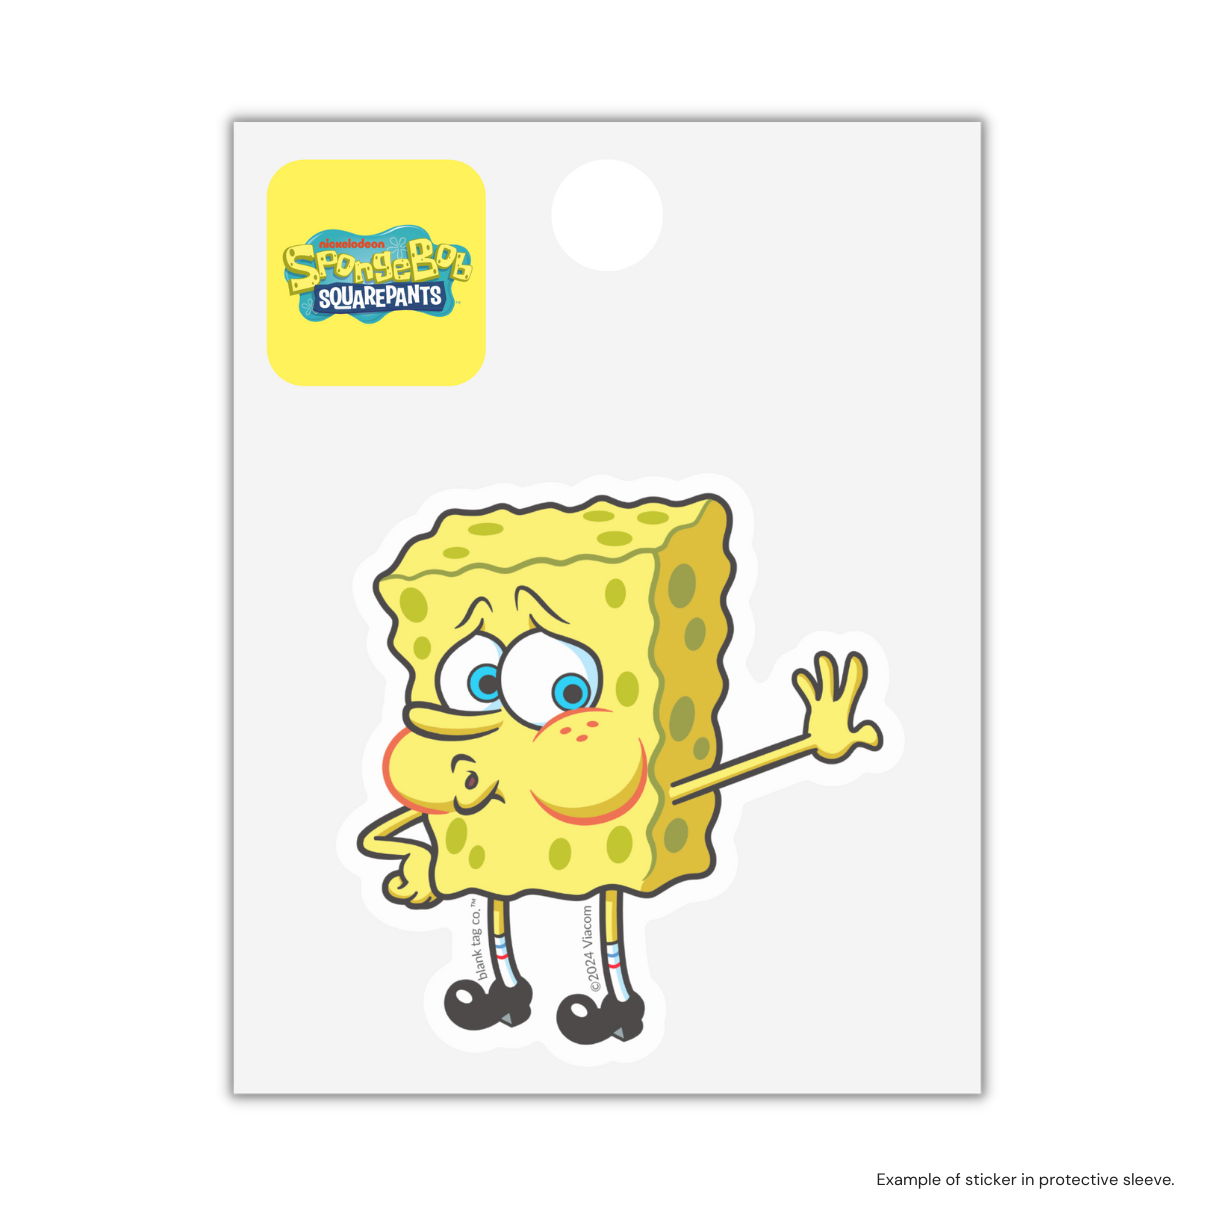 The Tired SpongeBob Meme Sticker